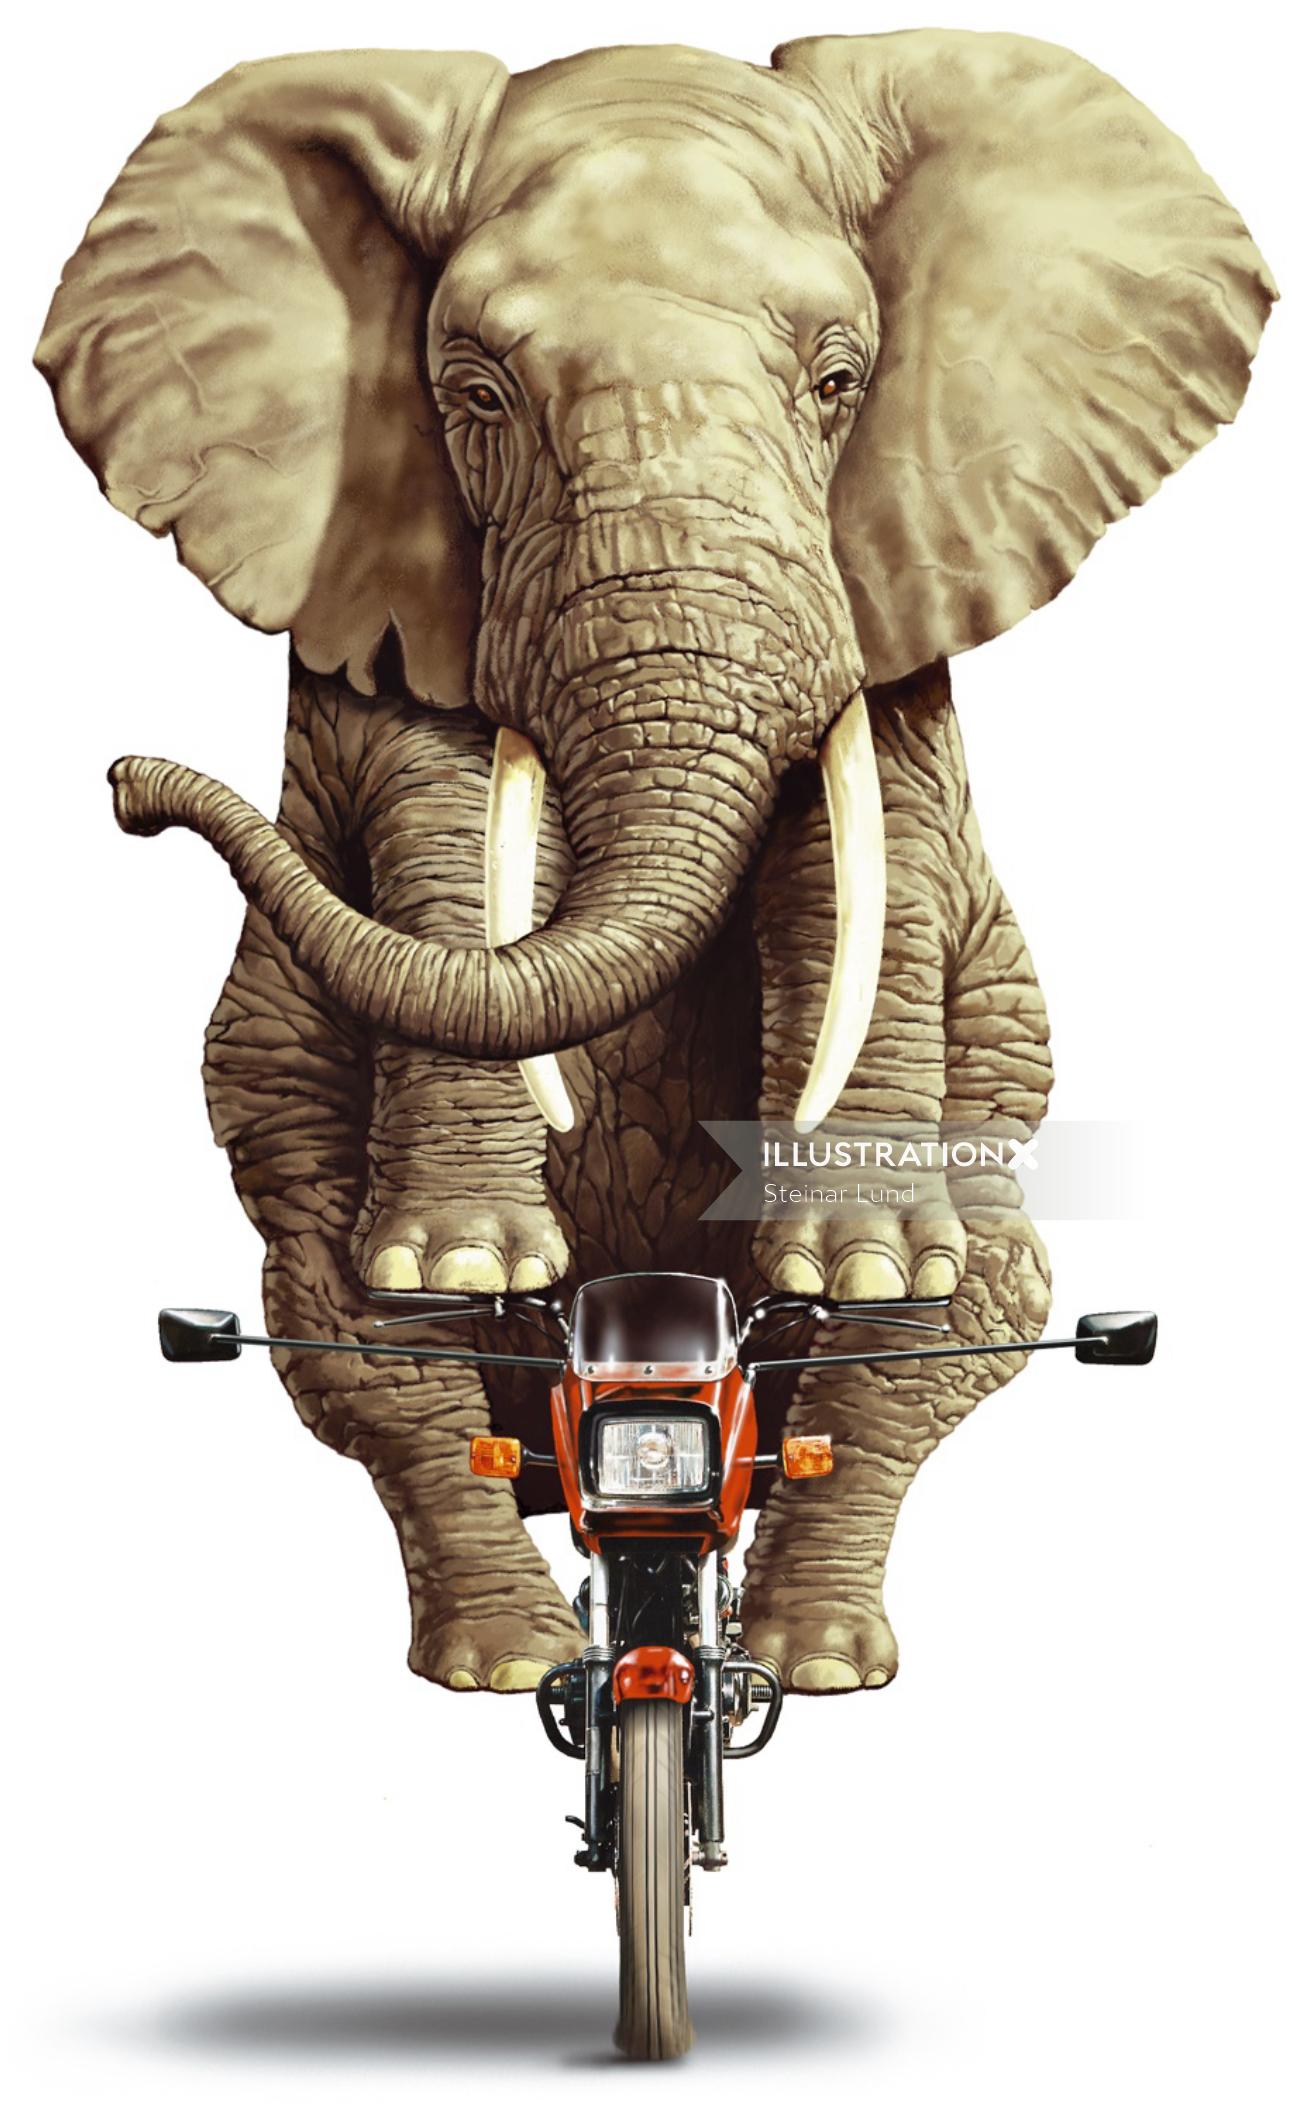 Elephant riding small motorbike illustration